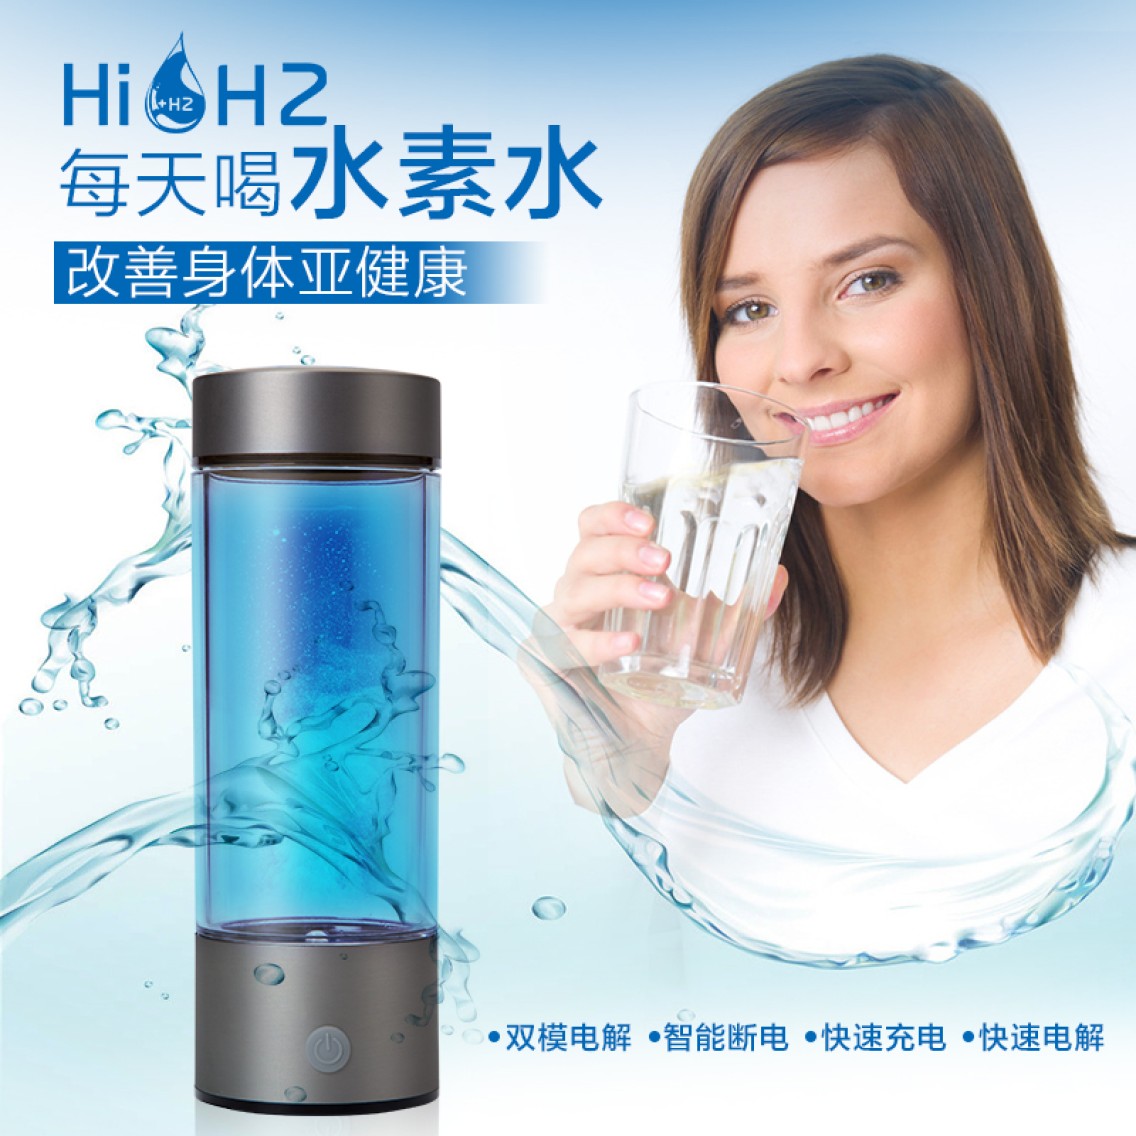 HiH2简约富氢水杯厂家 水素水杯批发图片